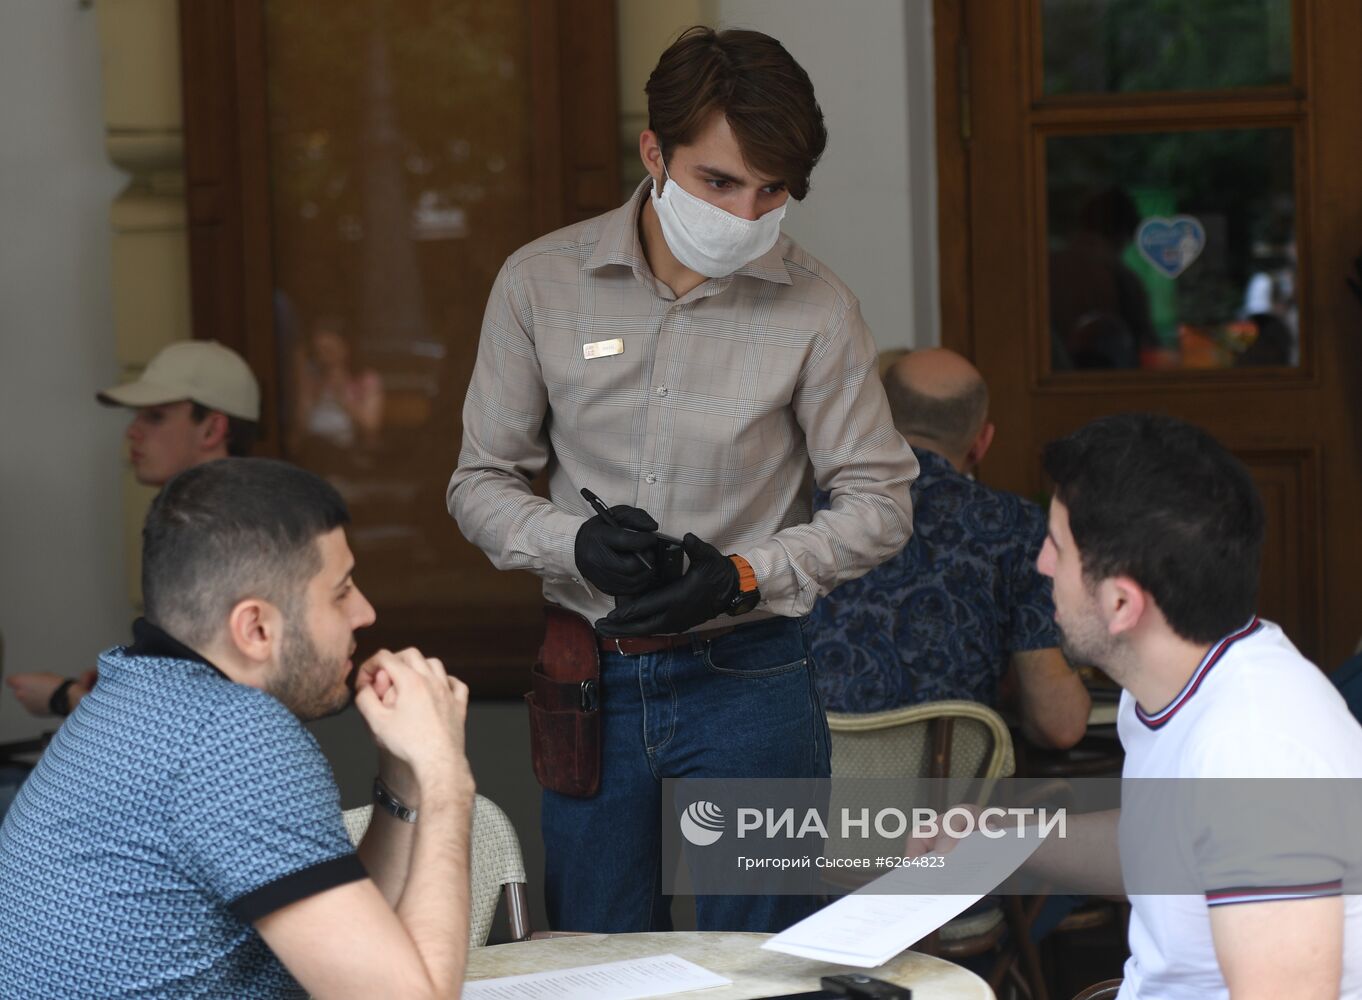 Мэр Москвы Собянин встретился с рестораторами